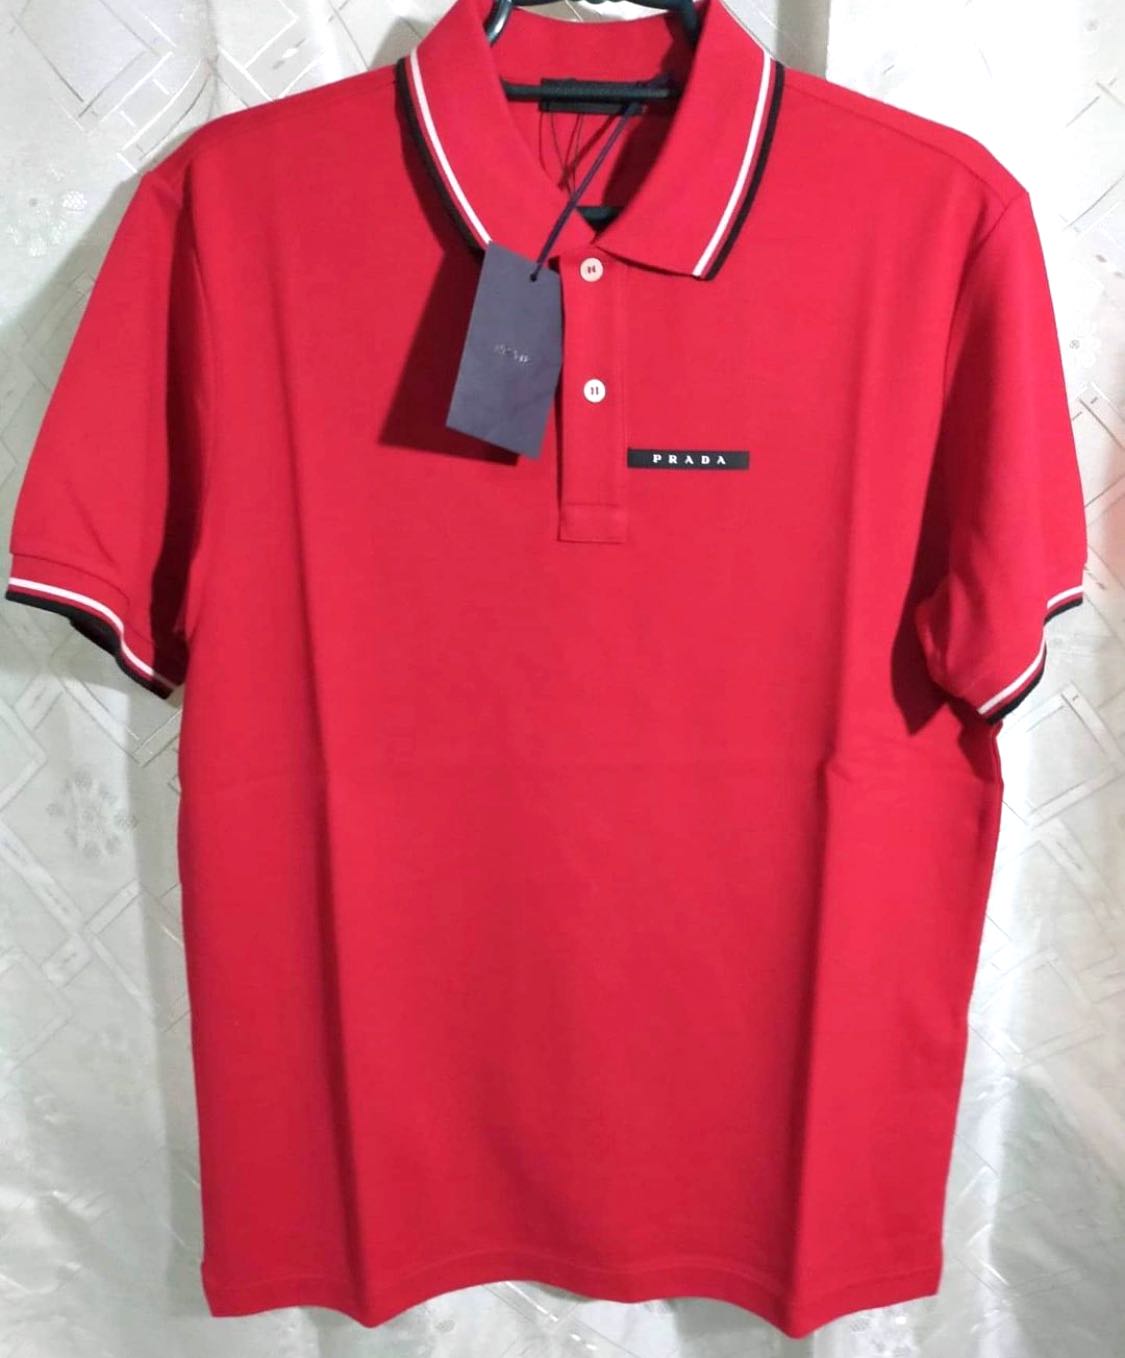 Brand New Prada Polo Shirt Red / Prada 